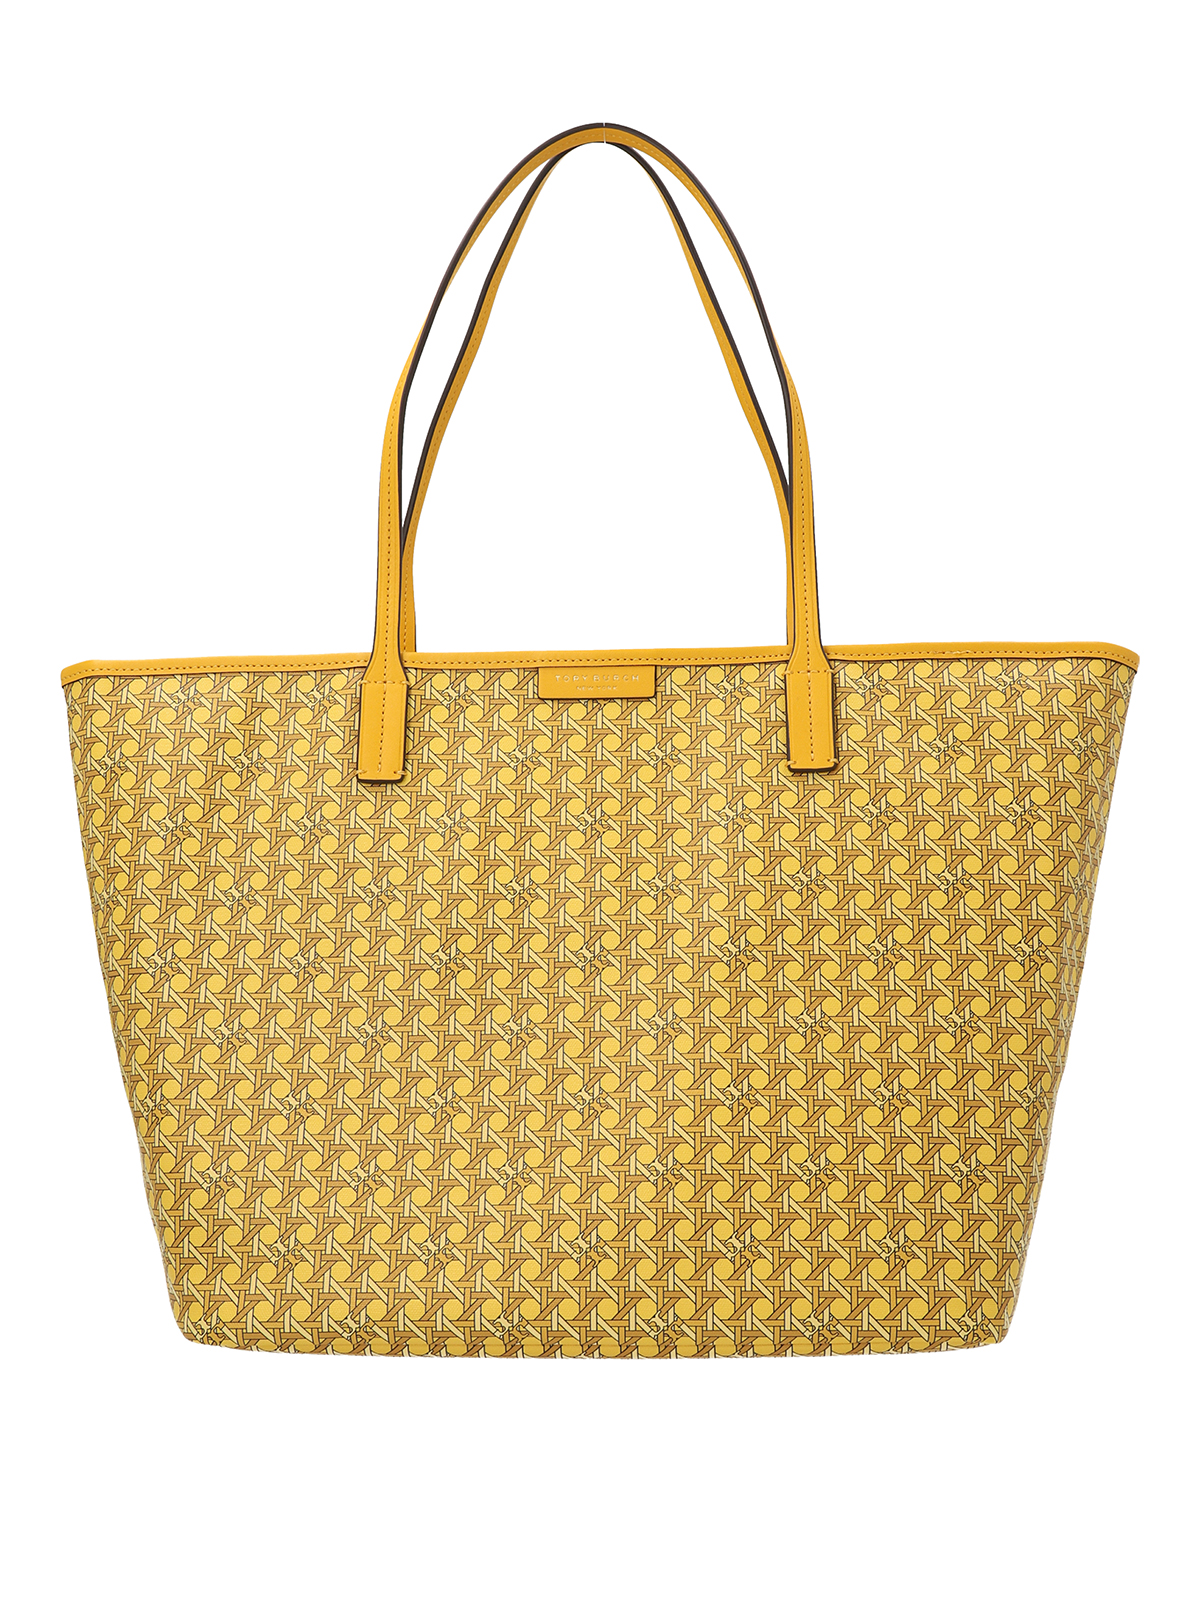 Tory Burch 'Basketweave Small' shopper bag, Women's Bags